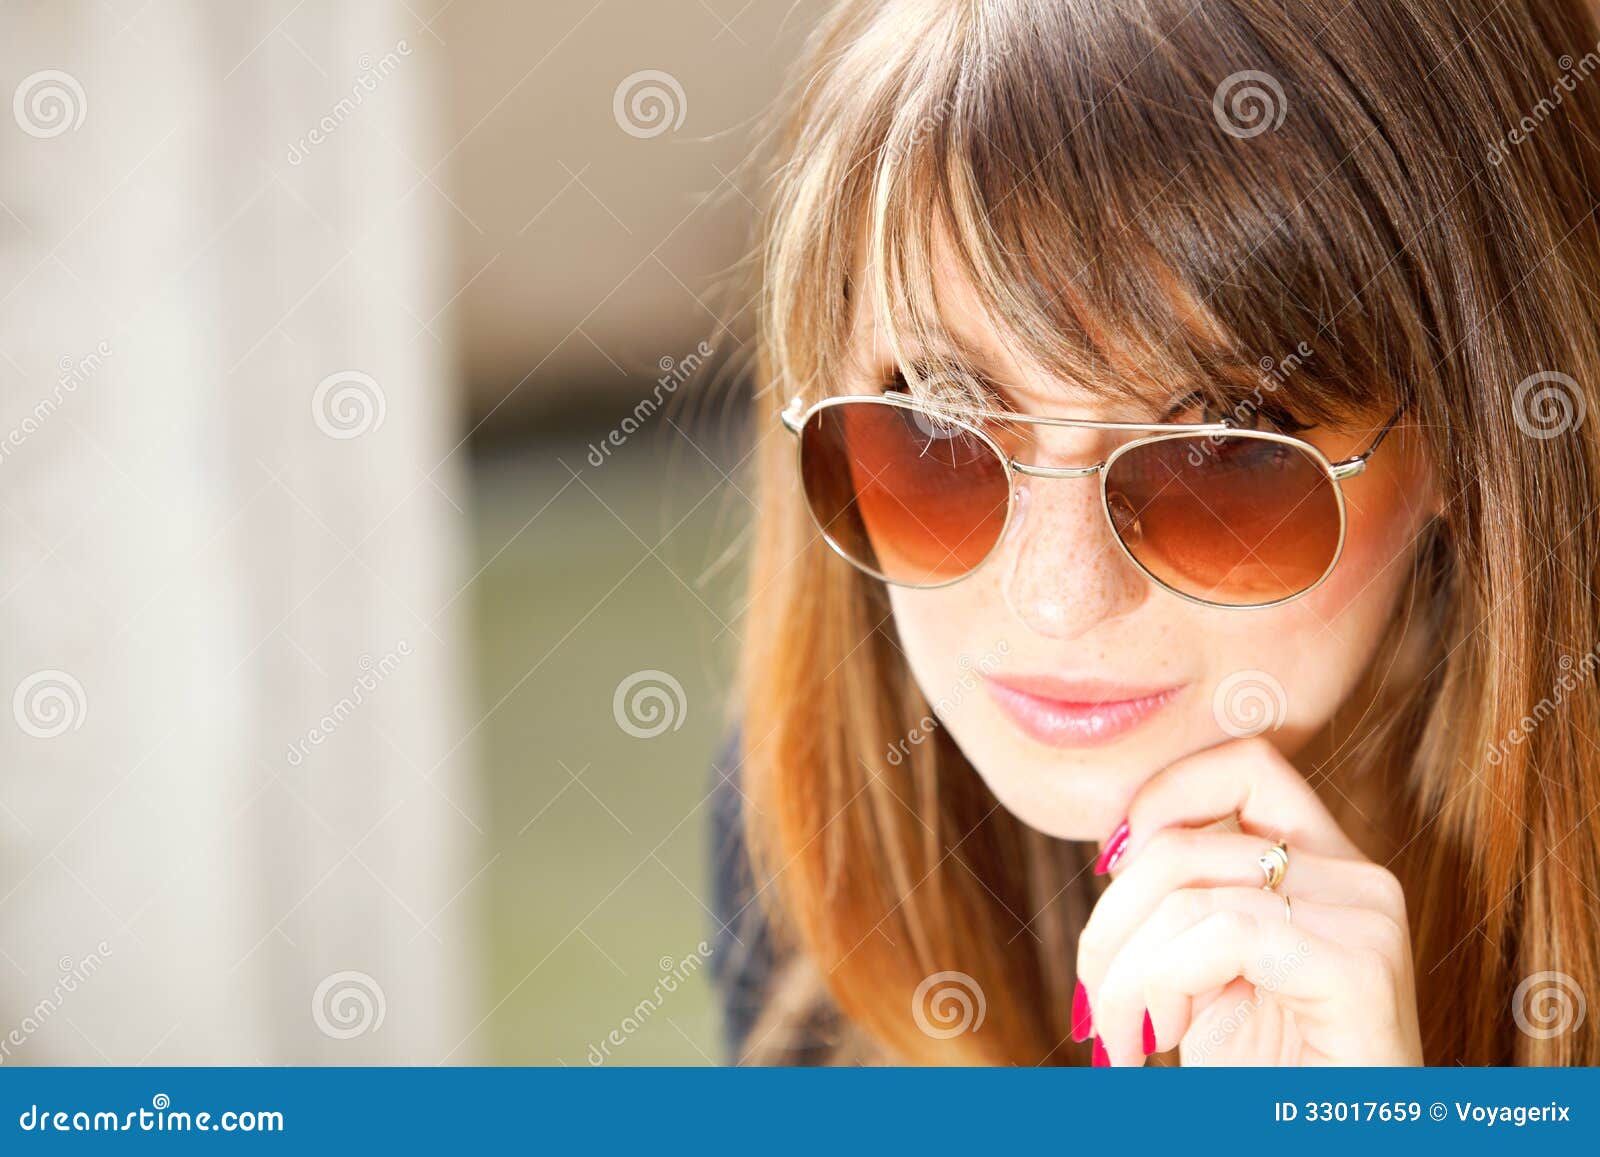 Portret rozważna kobieta na ulicie. Portret dosyć rozważna kobieta w okularach przeciwsłonecznych outdoors na ulicie